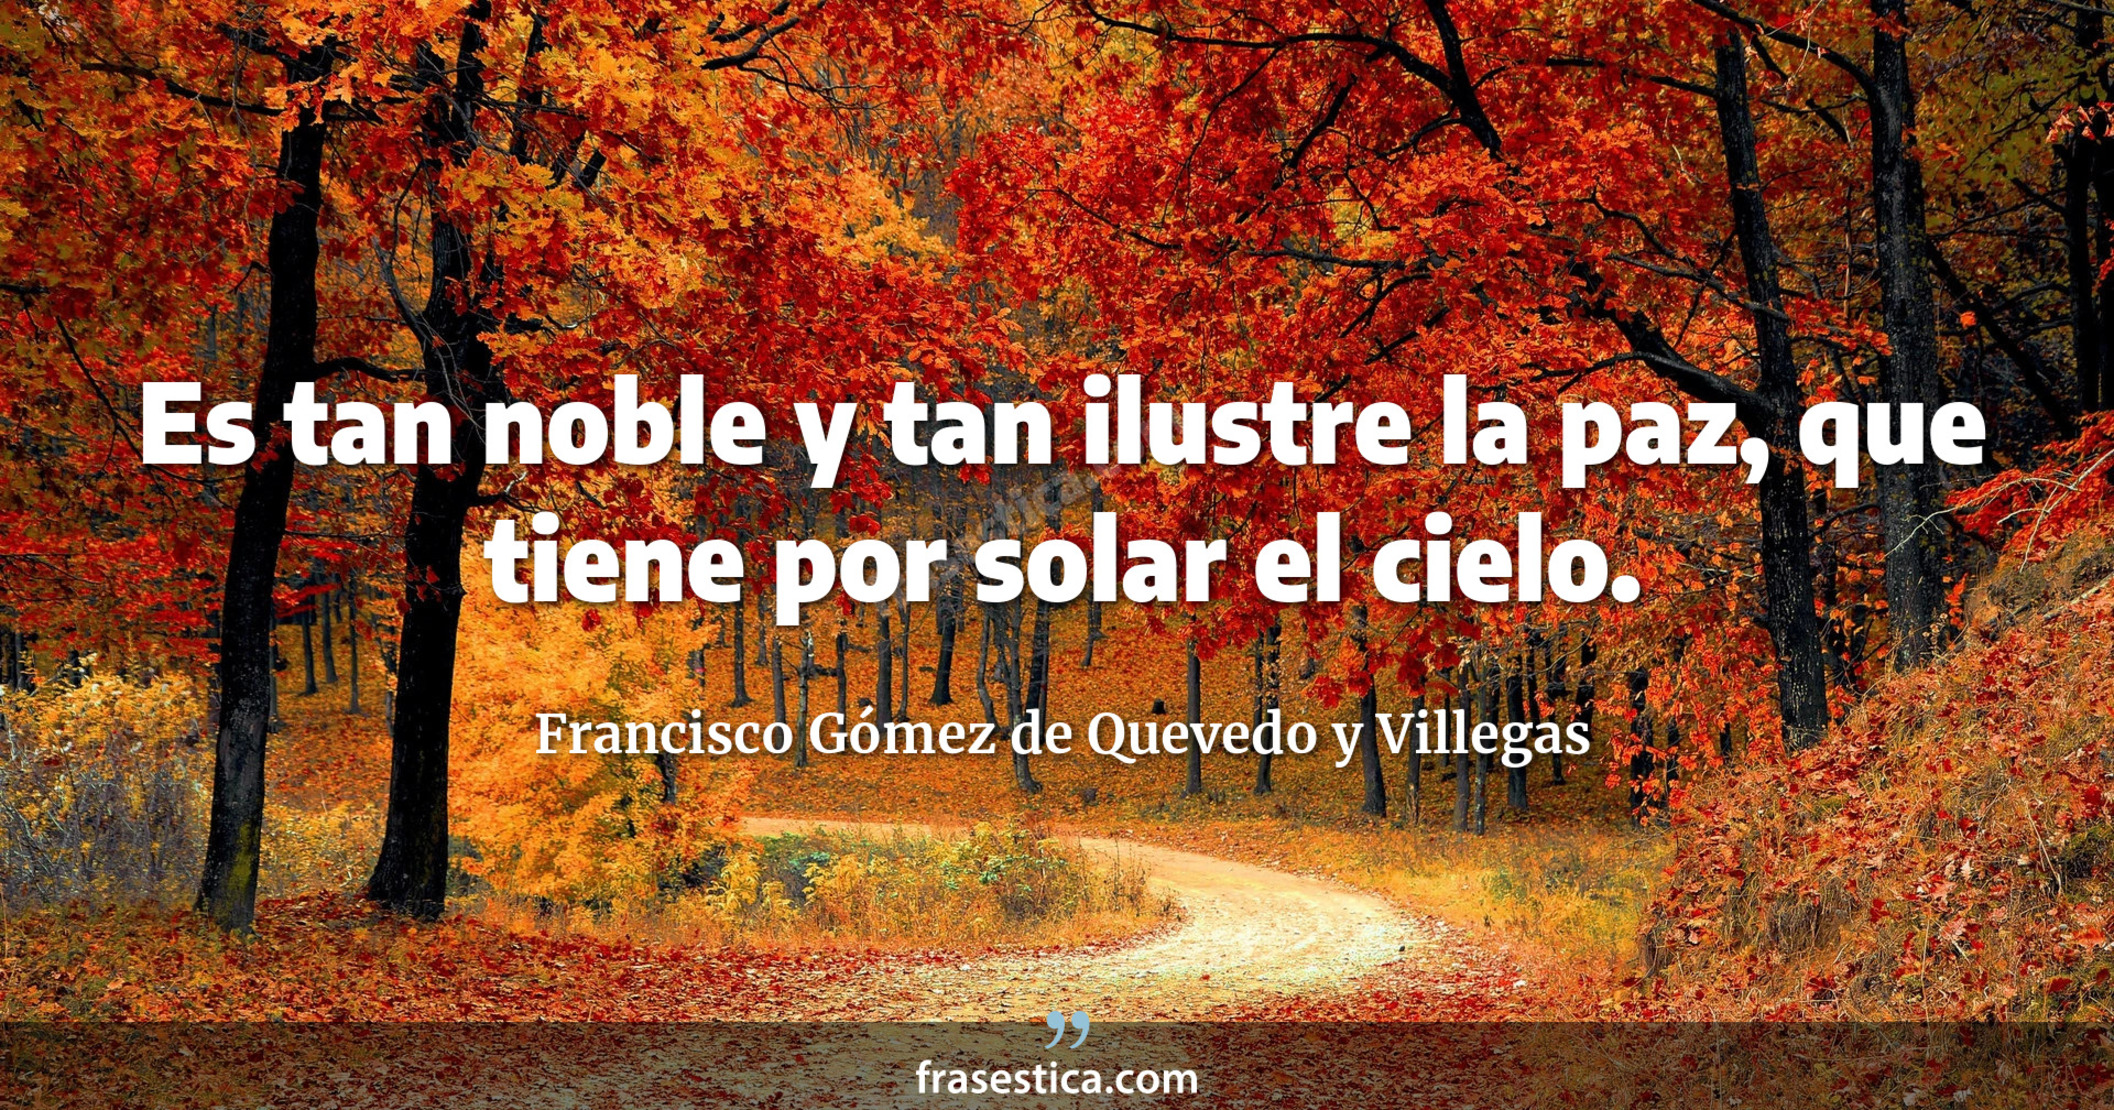 Es tan noble y tan ilustre la paz, que tiene por solar el cielo. - Francisco Gómez de Quevedo y Villegas